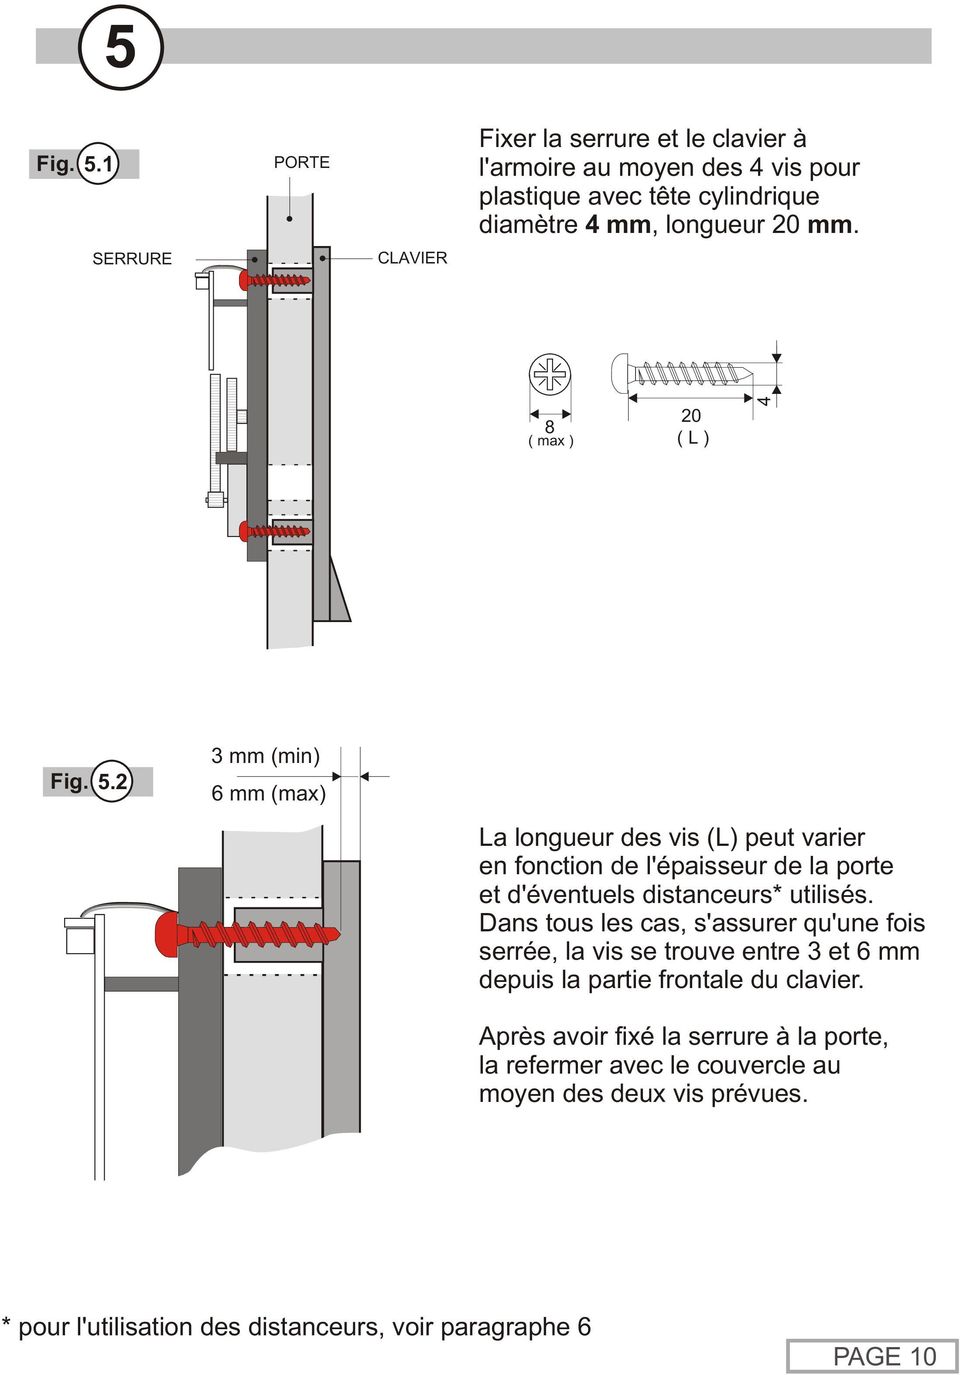 2 3 mm (min) 6 mm (max) La longueur des vis (L) peut varier en fonction de l'épaisseur de la porte et d'éventuels distanceurs* utilisés.